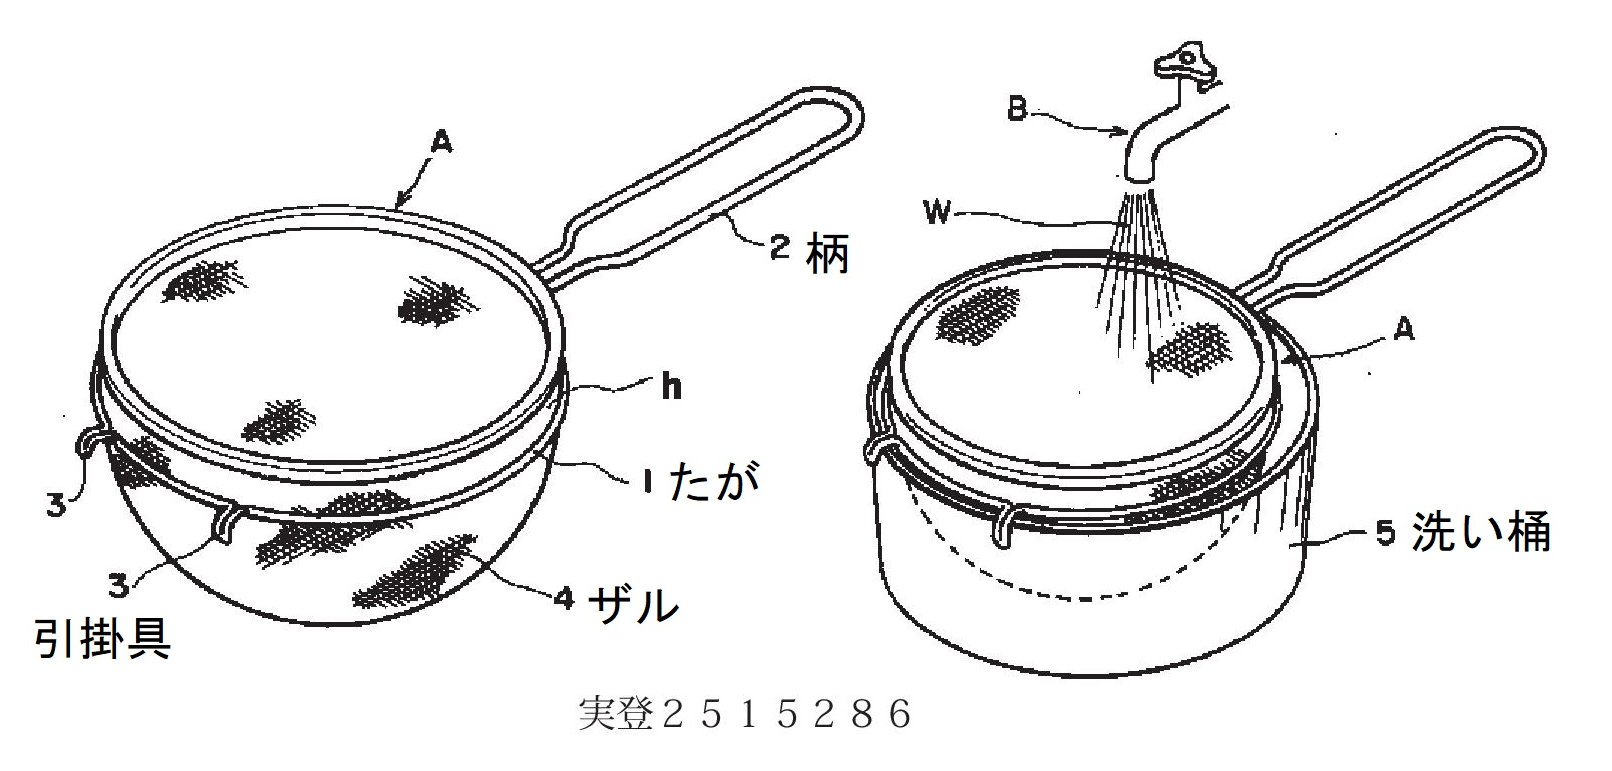 特許・実用新案の実例：調理用ザル